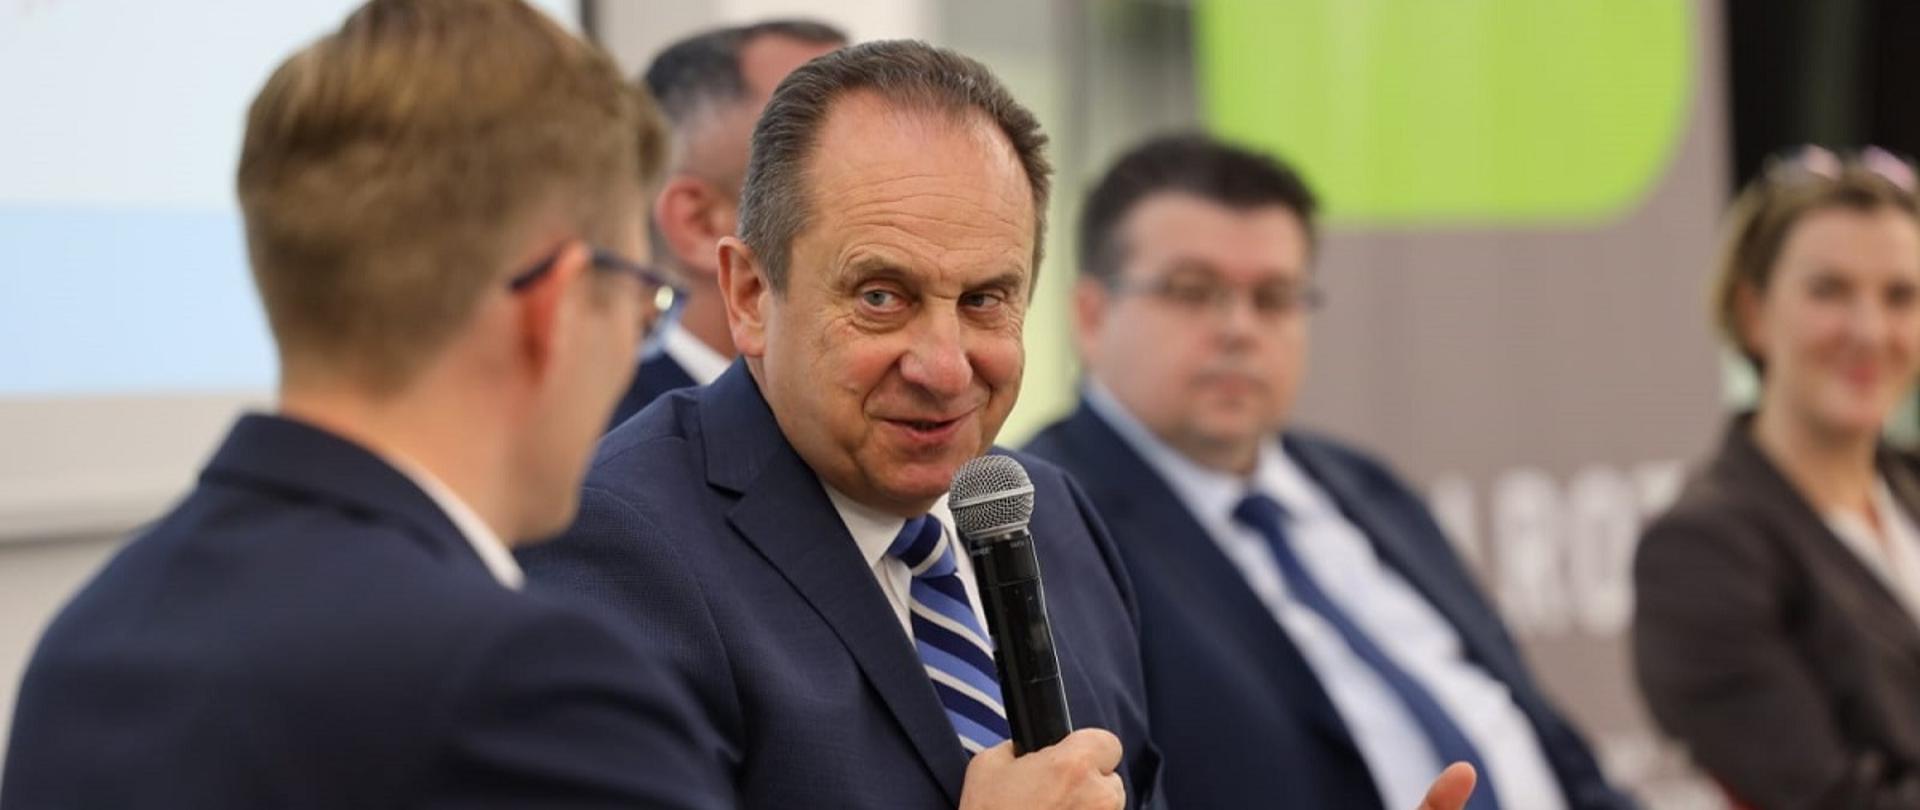 Wiceminister rozwoju i technologii Andrzej Gut-Mostowy podczas obrad konferencji z okazji Światowego Dnia Turystyki odbywającej się w Chełmie, wiceminister siedzi i trzyma w ręku mikrofon, obok uczestnicy spotkania